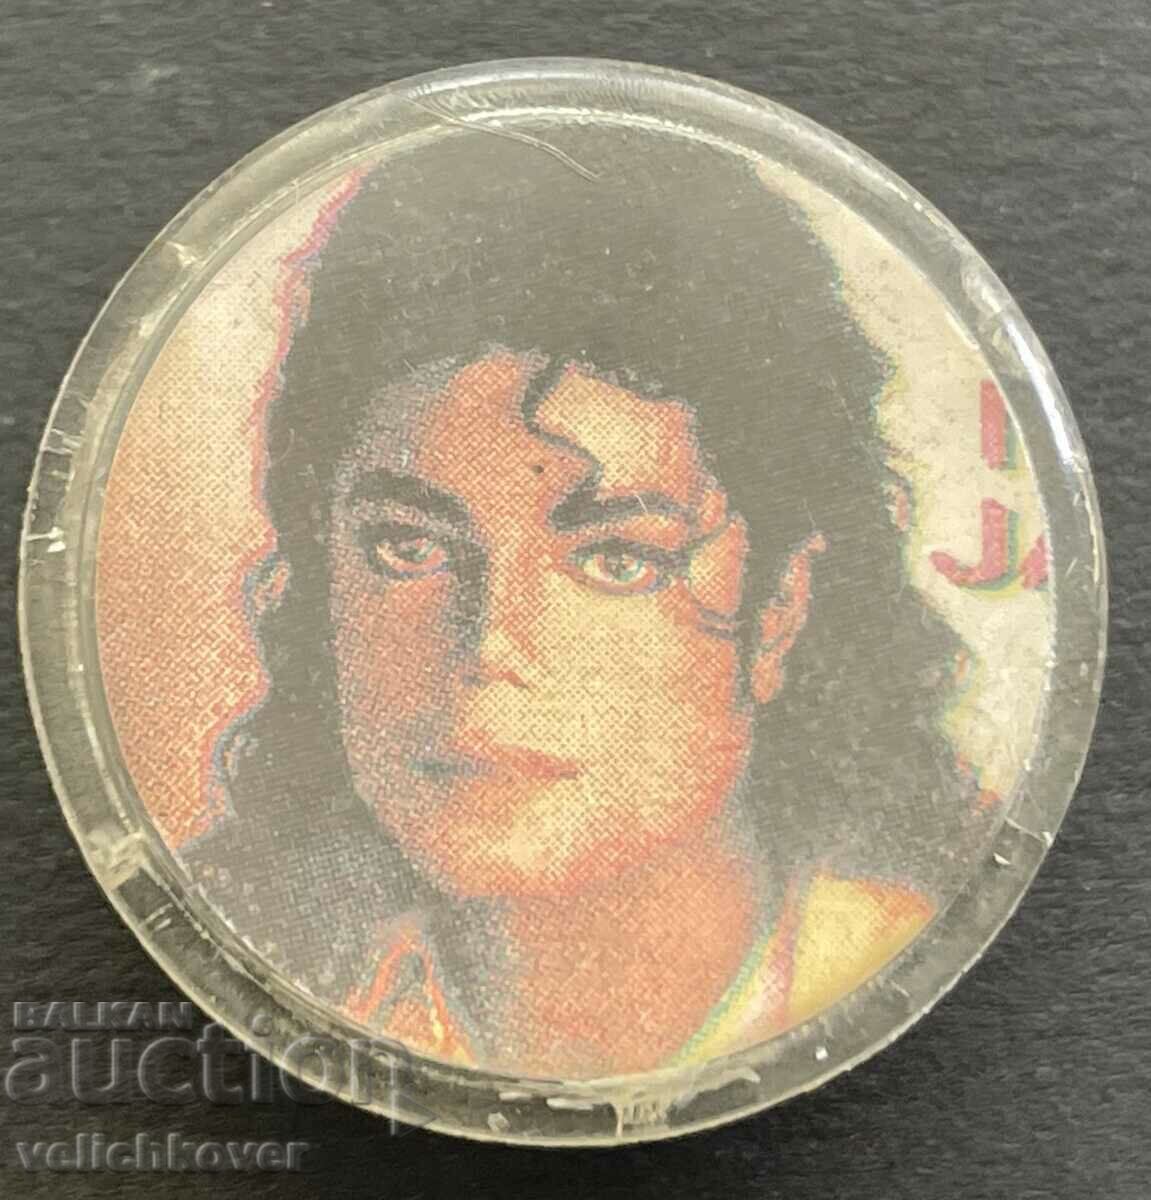 37637 Bulgaria semn cu imaginea lui Michael Jackson anii 80.